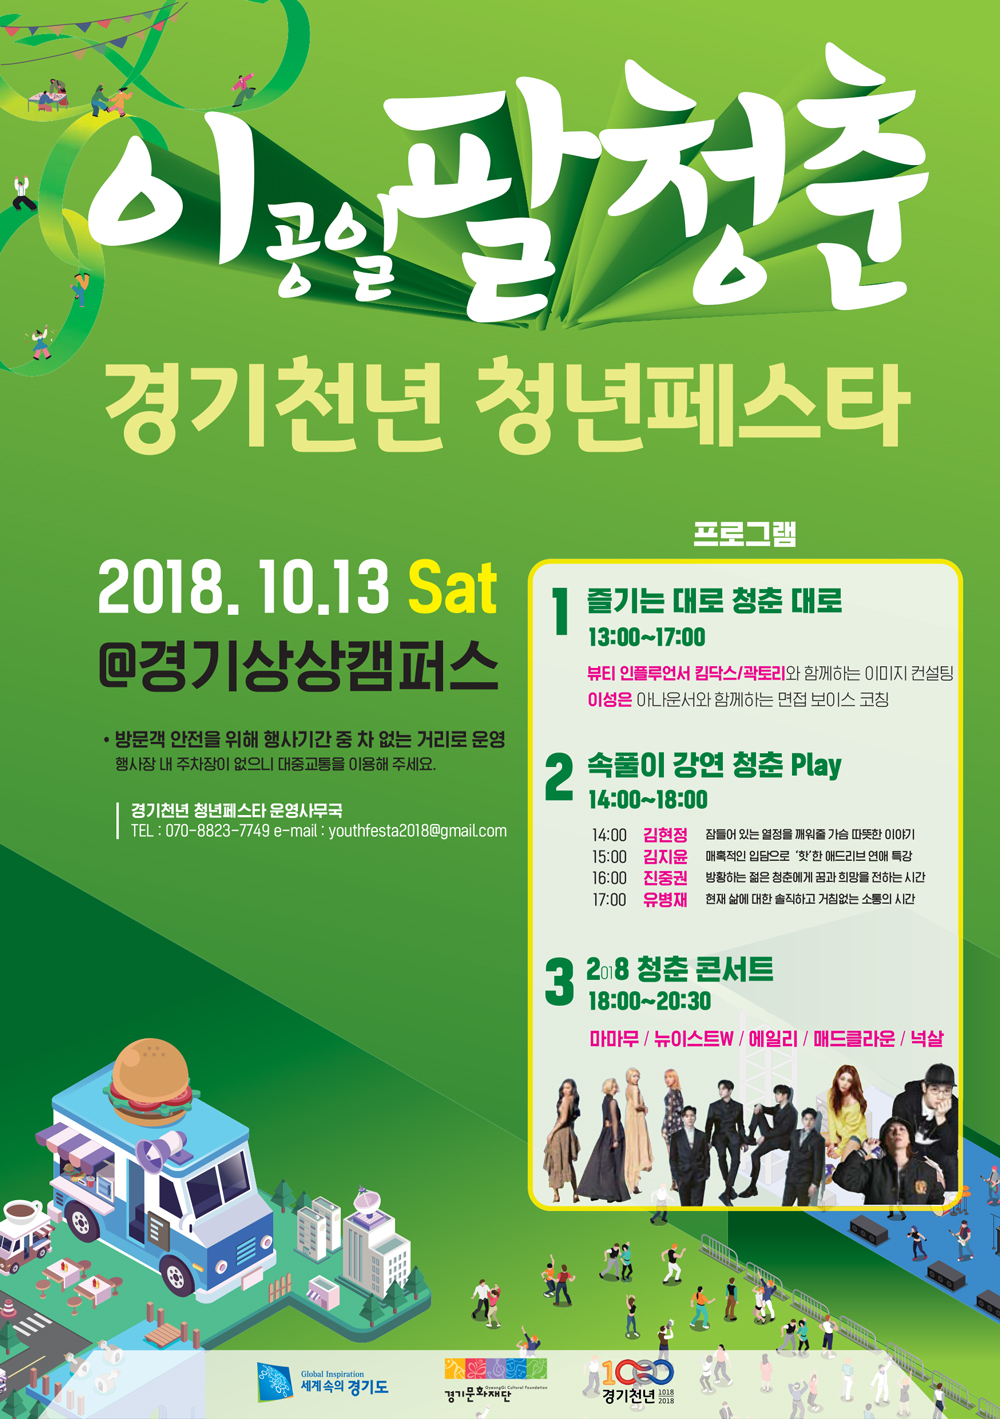 Gyeonggi Millennium Youth Festa 2018